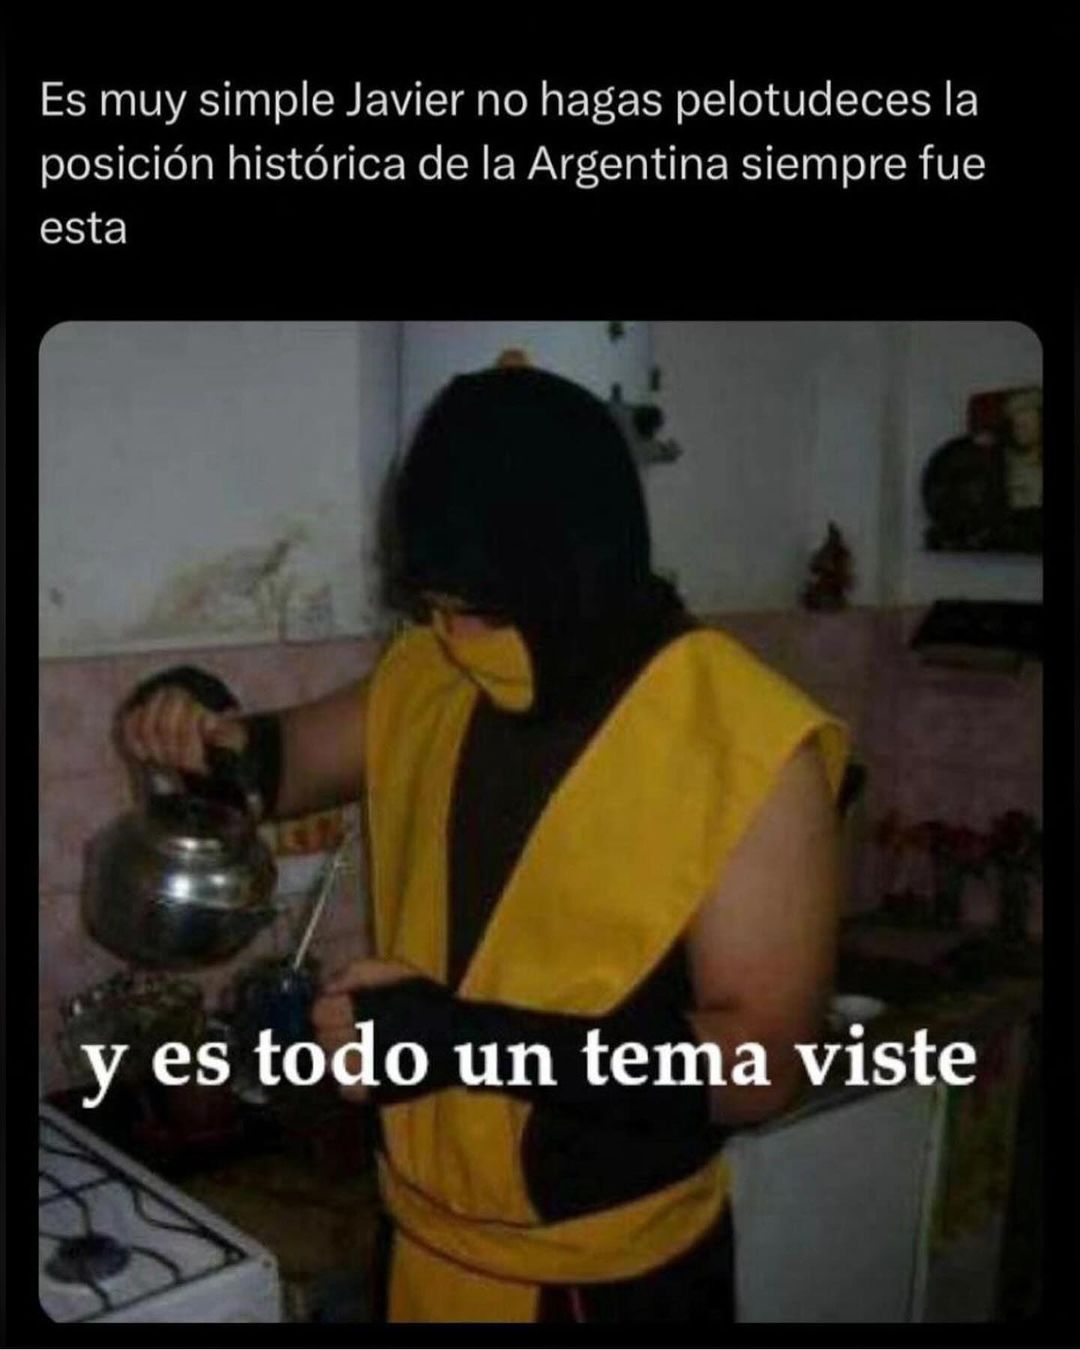 Conflicto en medio oriente, tercera guerra mundial y comité de crisis para esta fiesta de memes #LaPoliticaEnMemes #argentina #Memesargentina #peronismo #politica #cfk #massa #milei #viral #macri #humor #ucr #ki